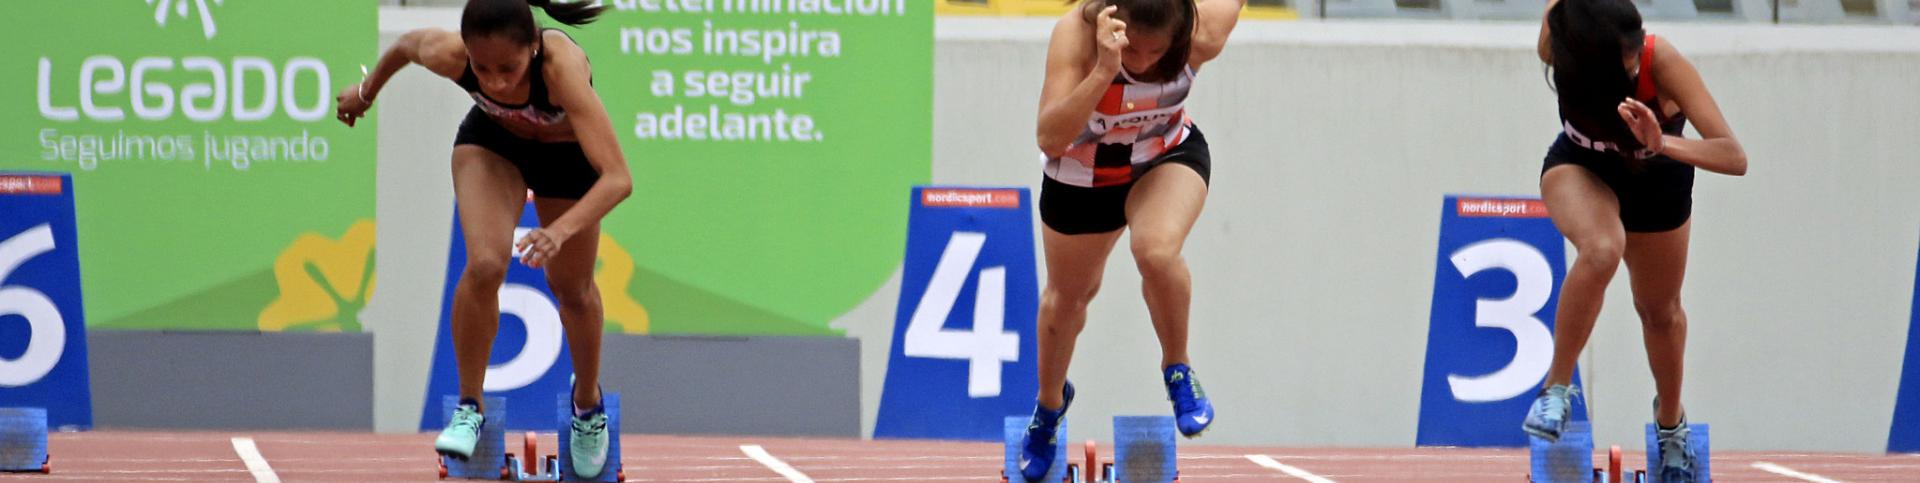 Sudor y lágrimas: Así inició el Campeonato Nacional de Atletismo en el Estadio Atlético de la VIDENA